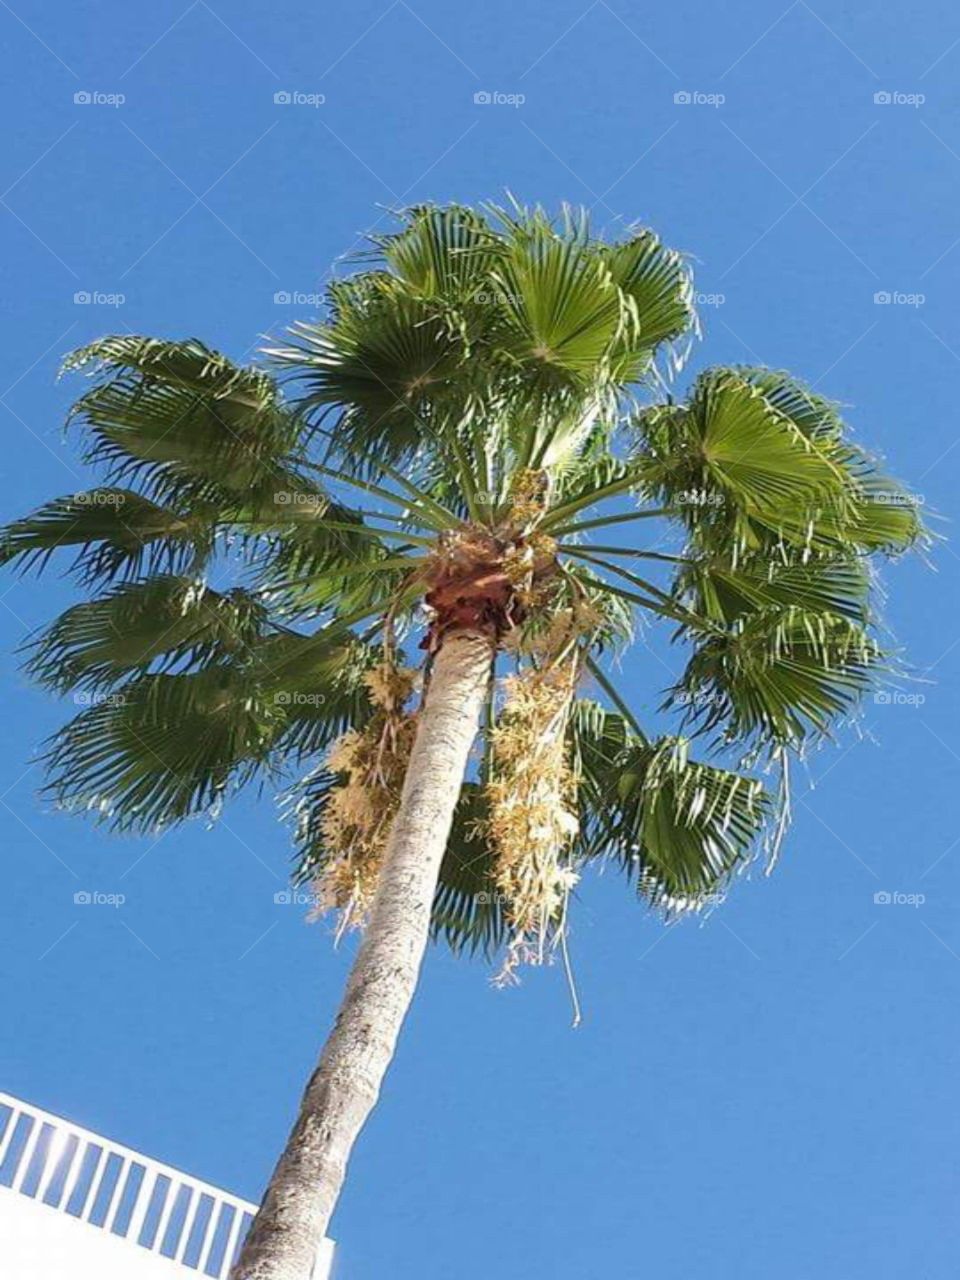 a single palm tree in an ocean blue sky